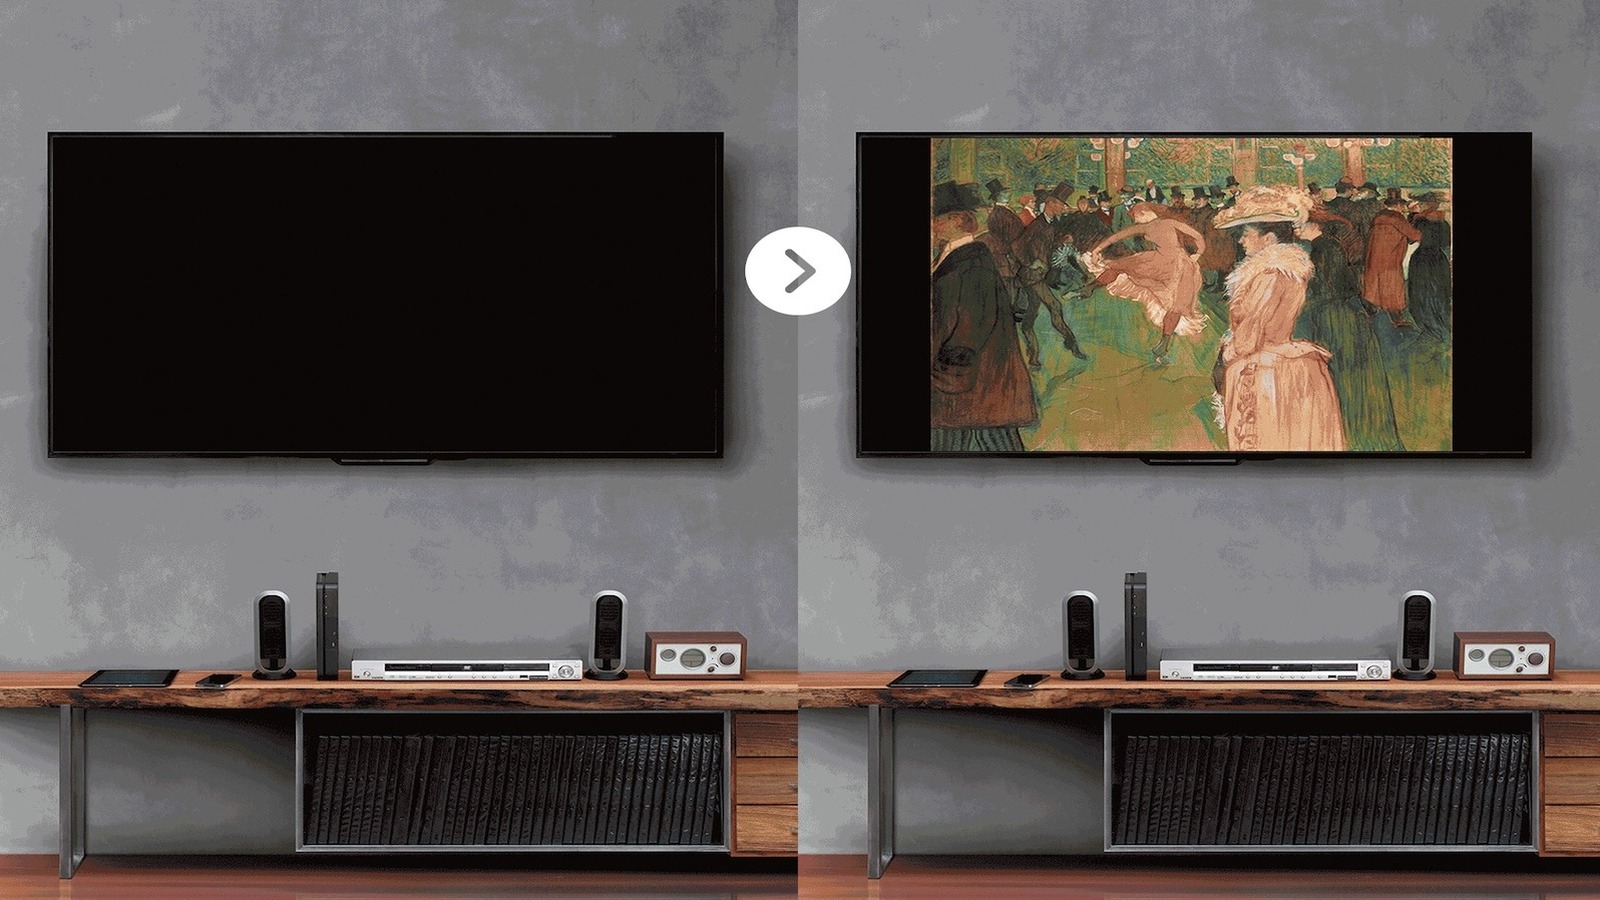 این گجت تلویزیون شما را به یک گالری هنری دیجیتال تبدیل می کند، بدون نیاز به قاب سامسونگ